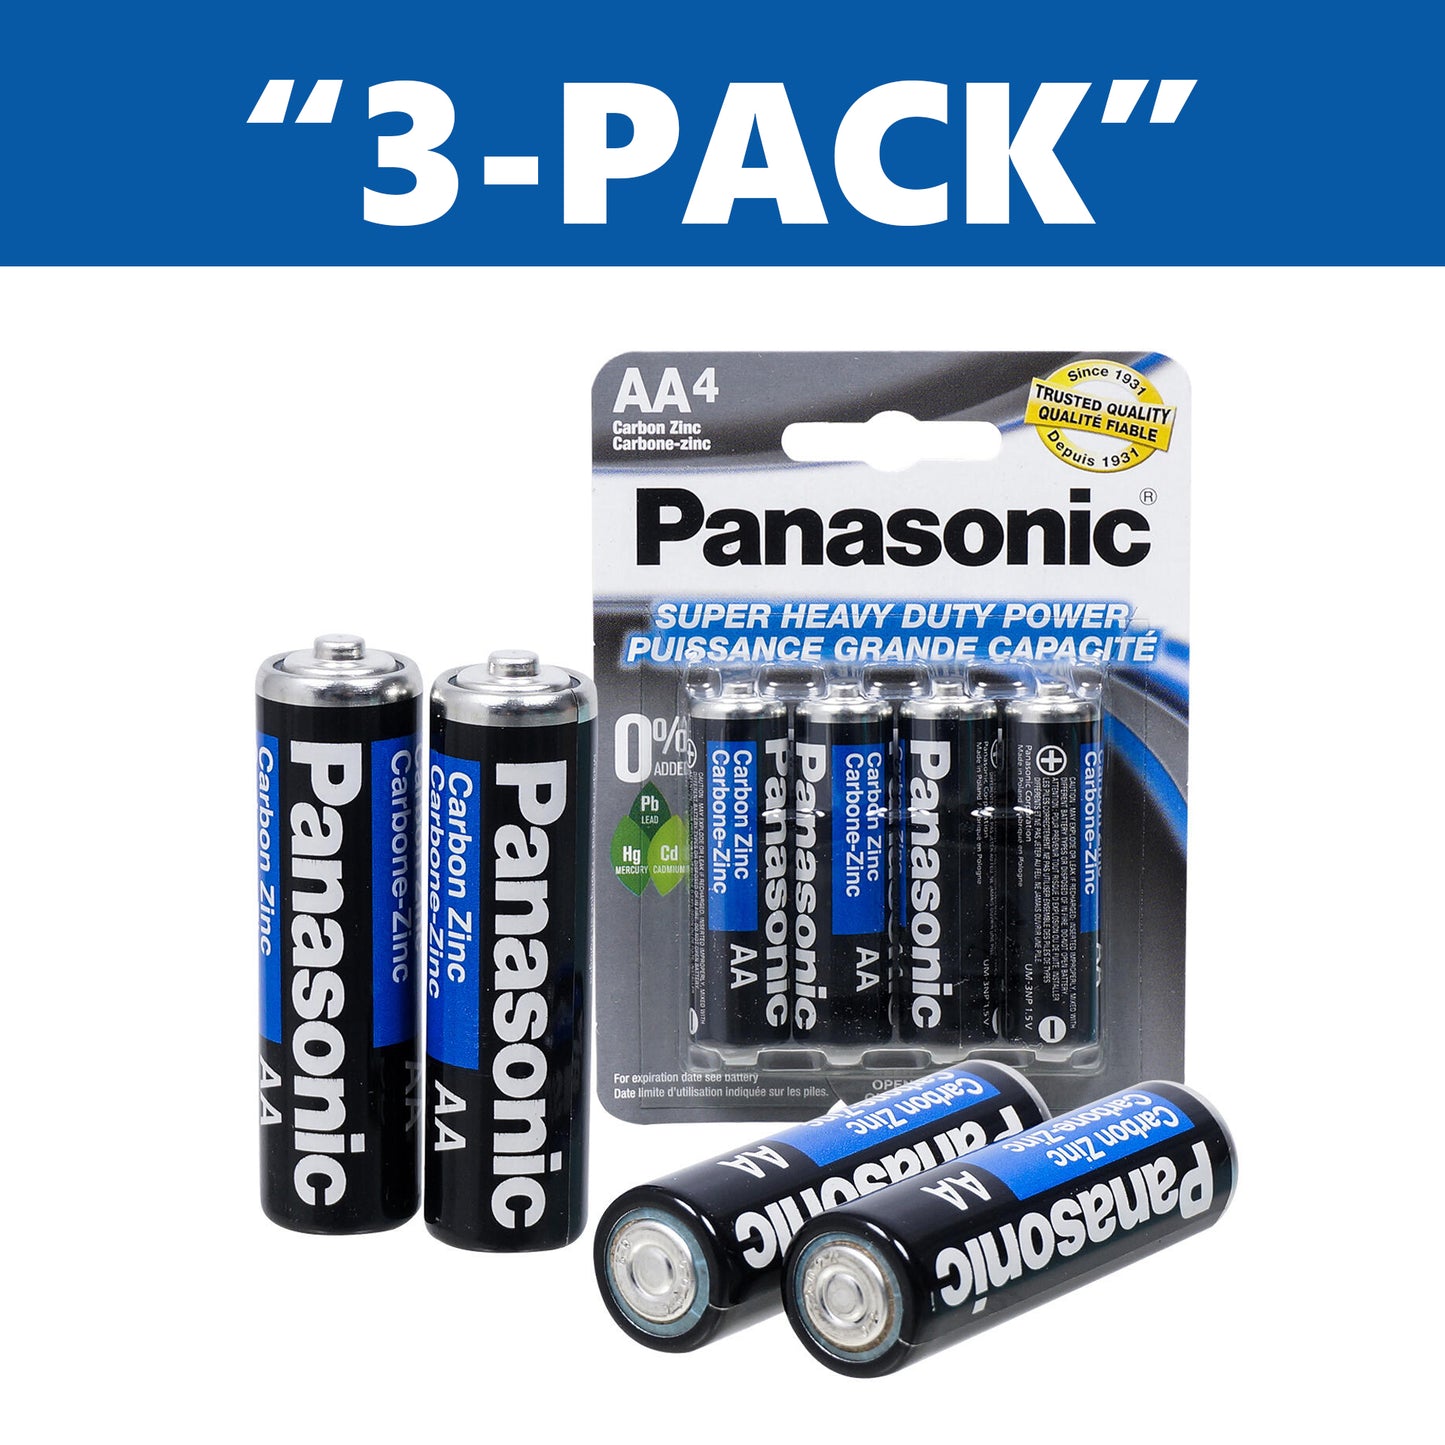 Panasonic AA Batteries Super Heavy Duty Power Carbon Zinc 4pc "3-PACK"